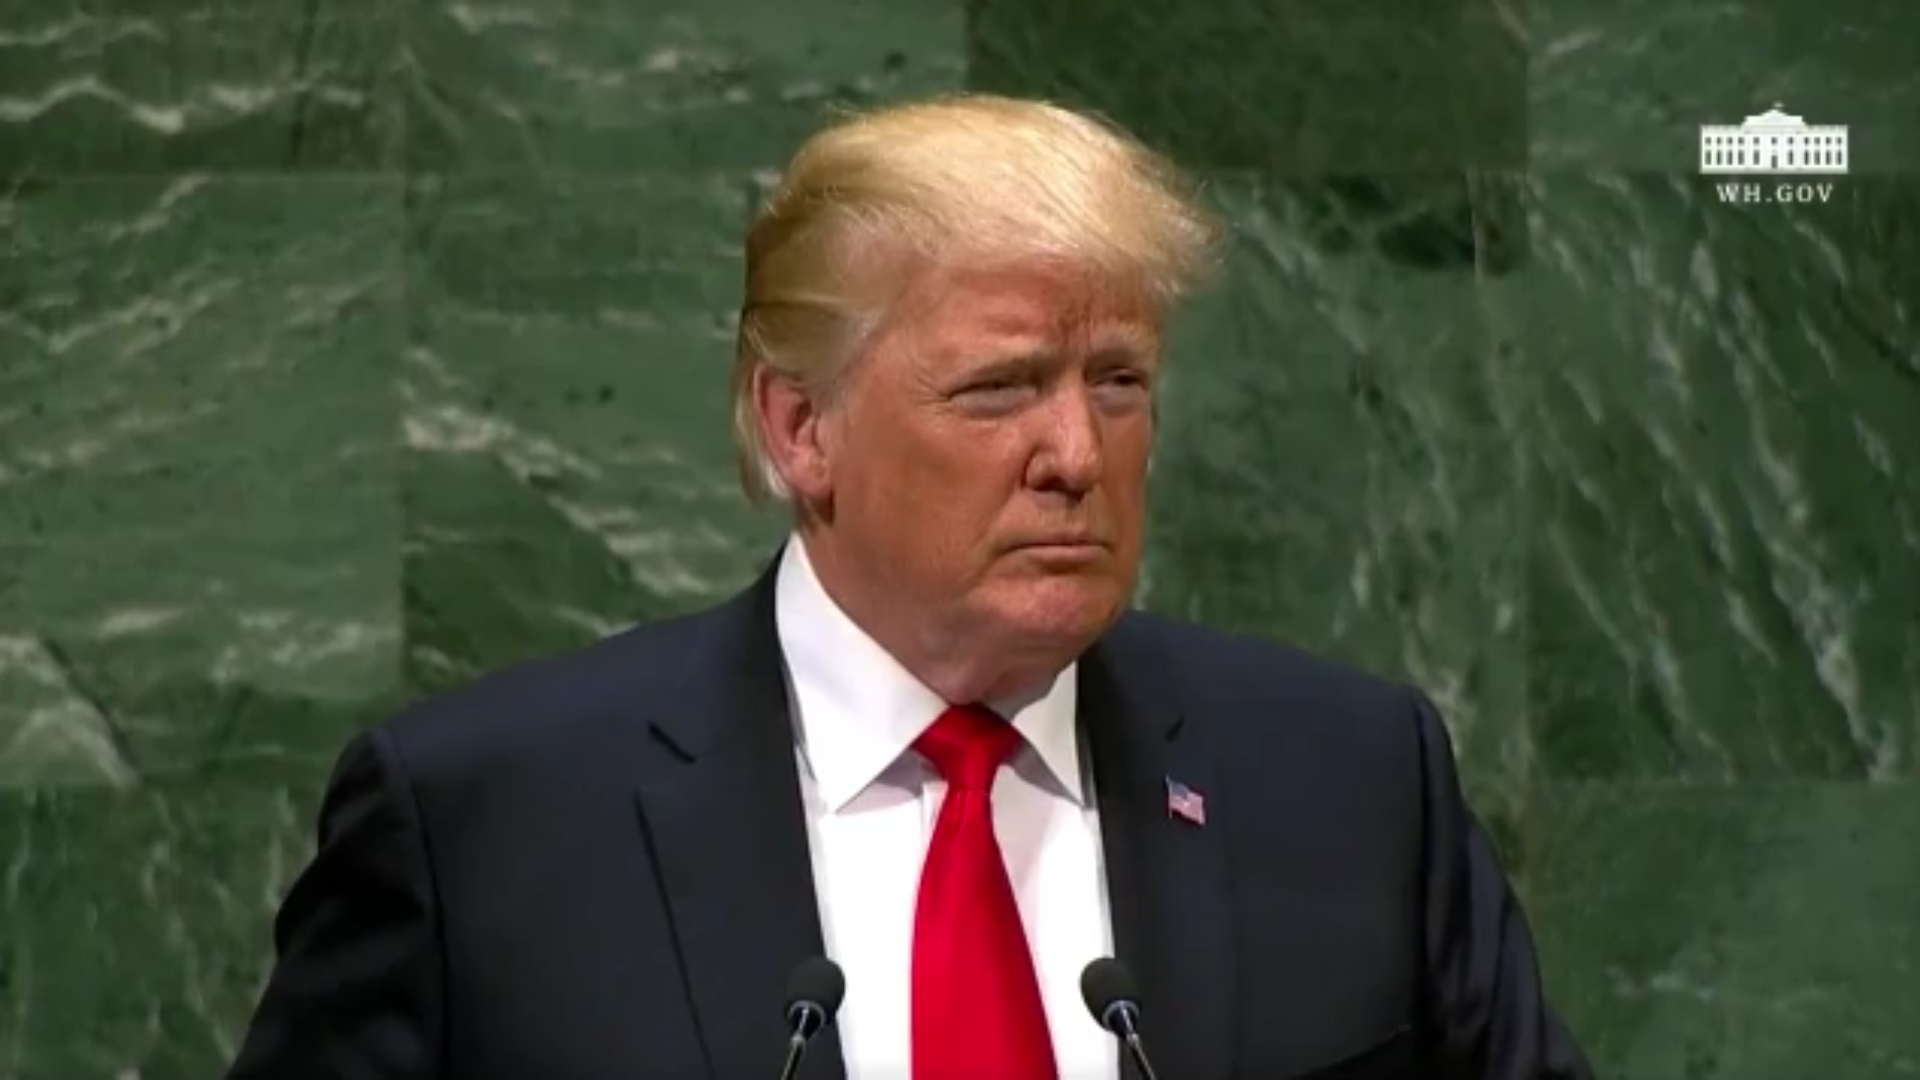 Trump na ONU: “rejeitamos o globalismo e abraçamos o patriotismo”